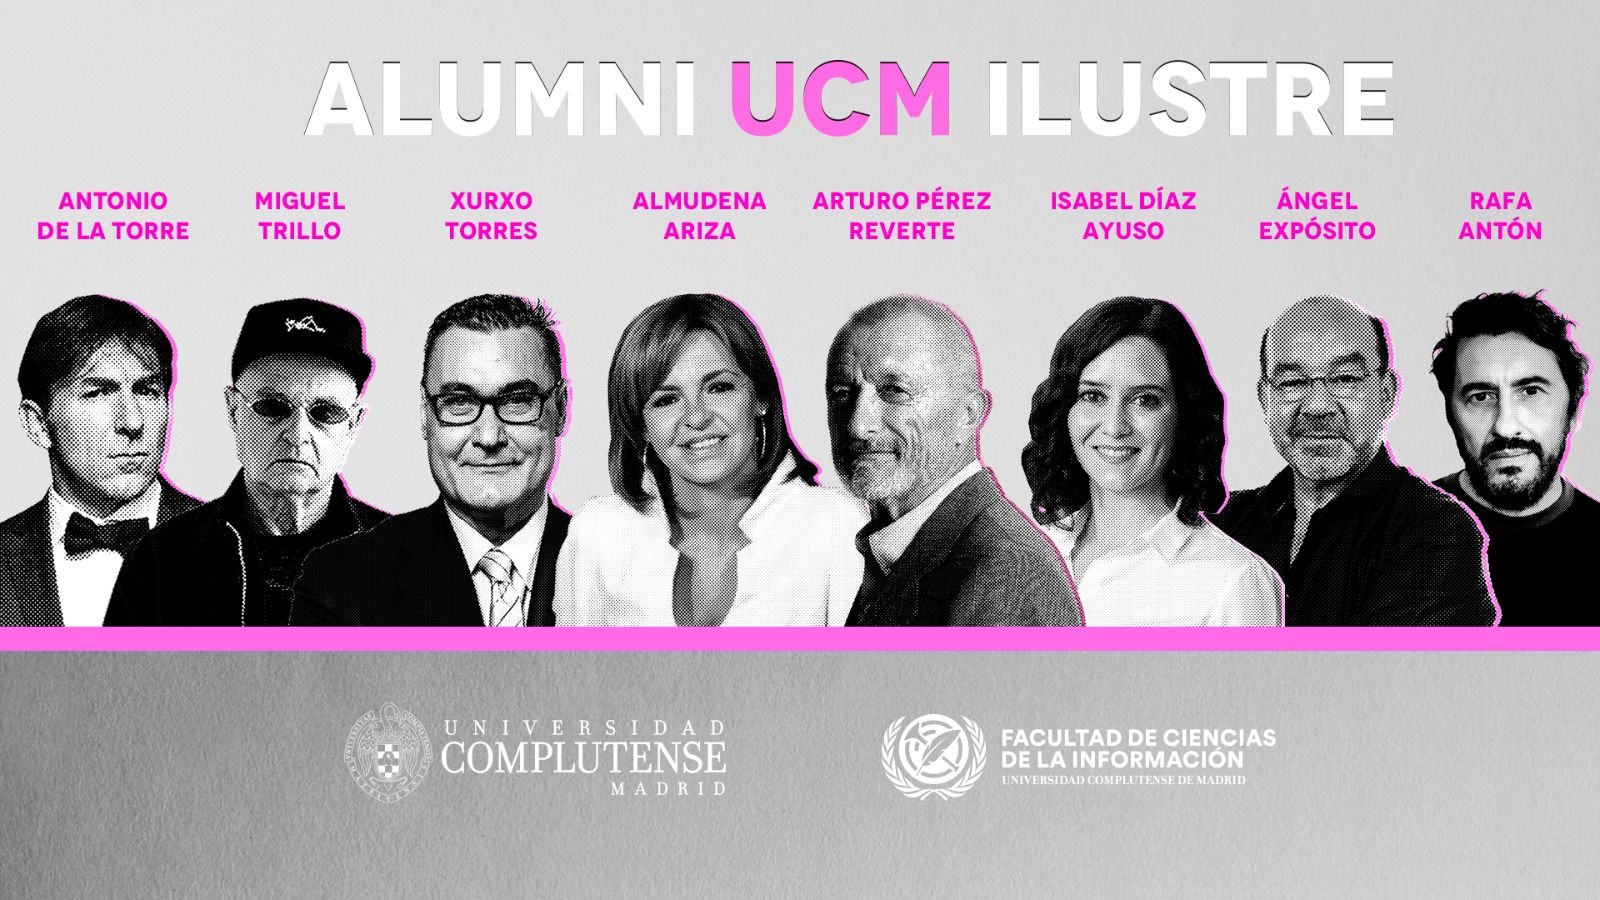 La Facultad suma nuevos egresados a la lista de Alumni UCM ilustre